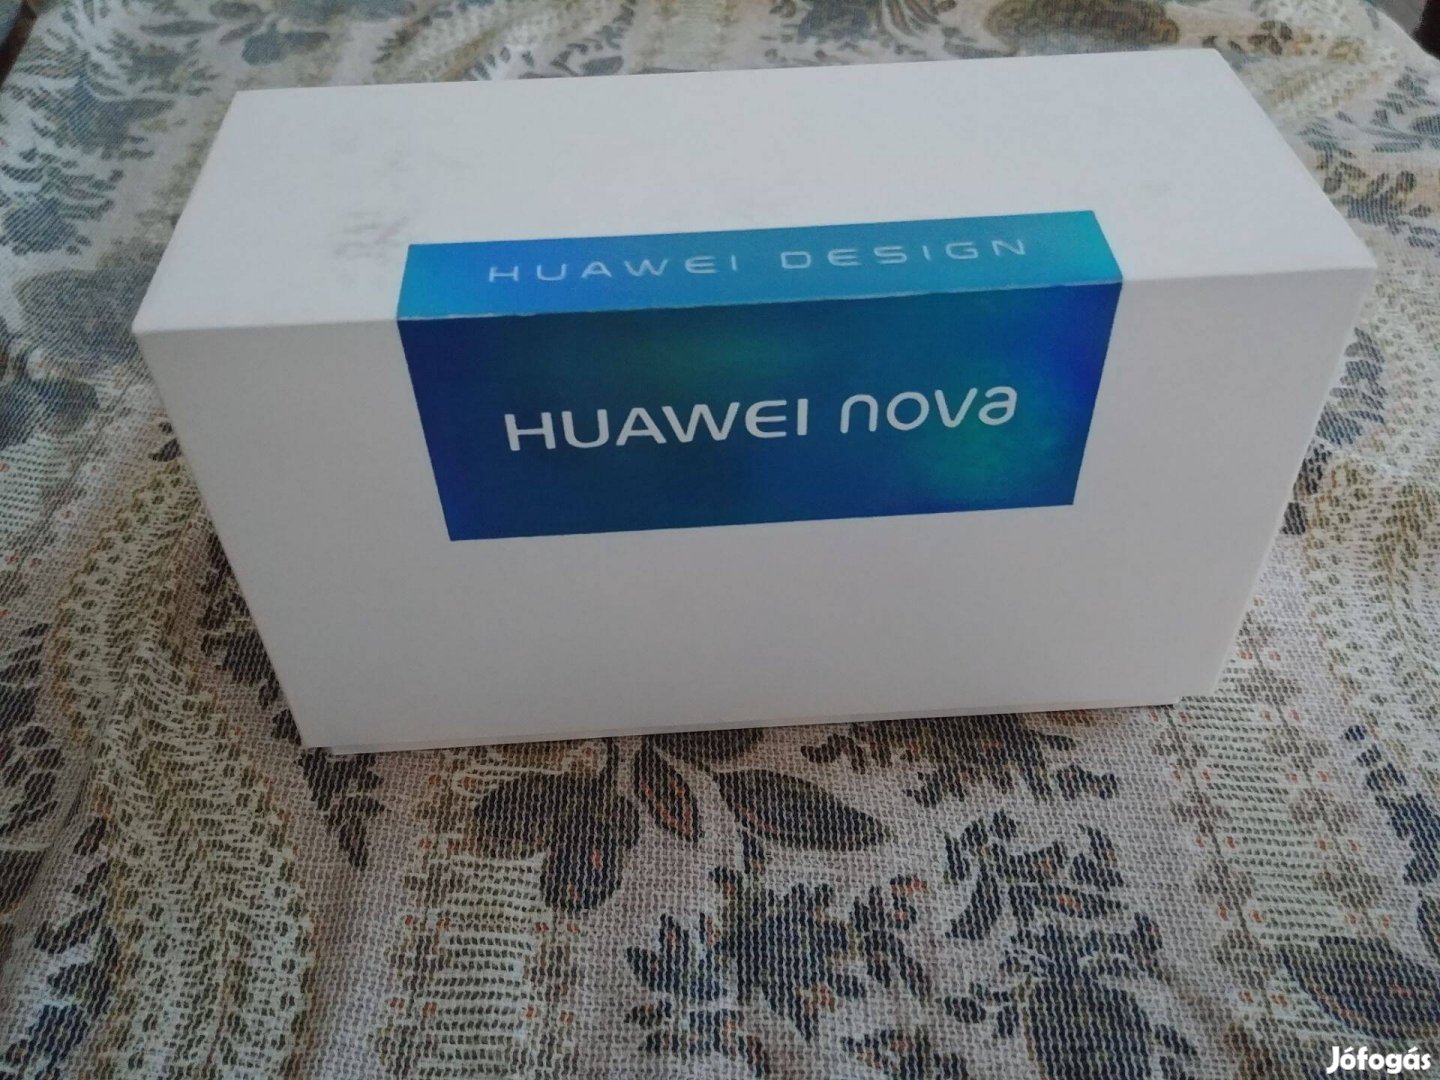 Olcsóbb lett - Eladó Huawei Nova CAN-L11, Magyar, dual SIM